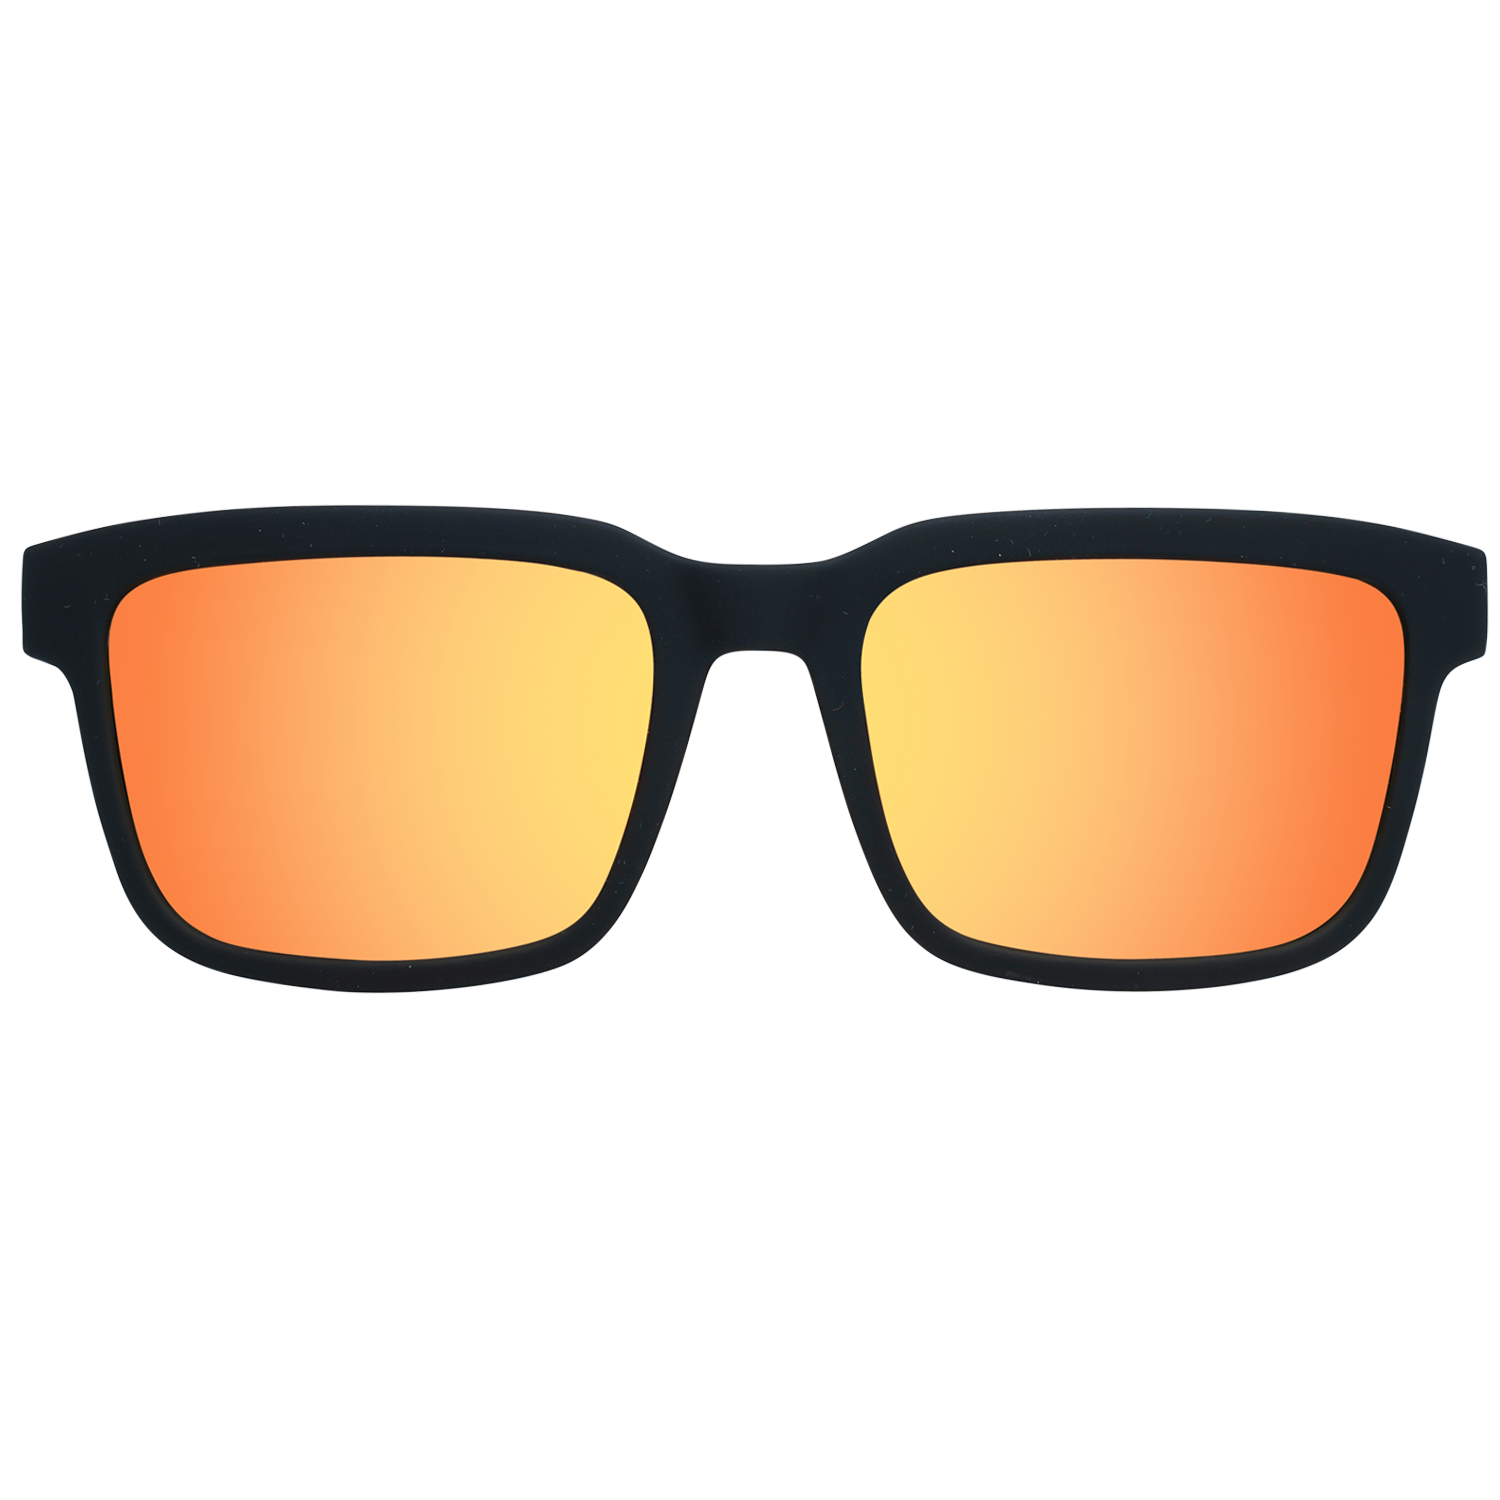 Spy Sunglasses Spy Sunglasses 673520973365 Helm 2 57 Eyeglasses Eyewear UK USA Australia 